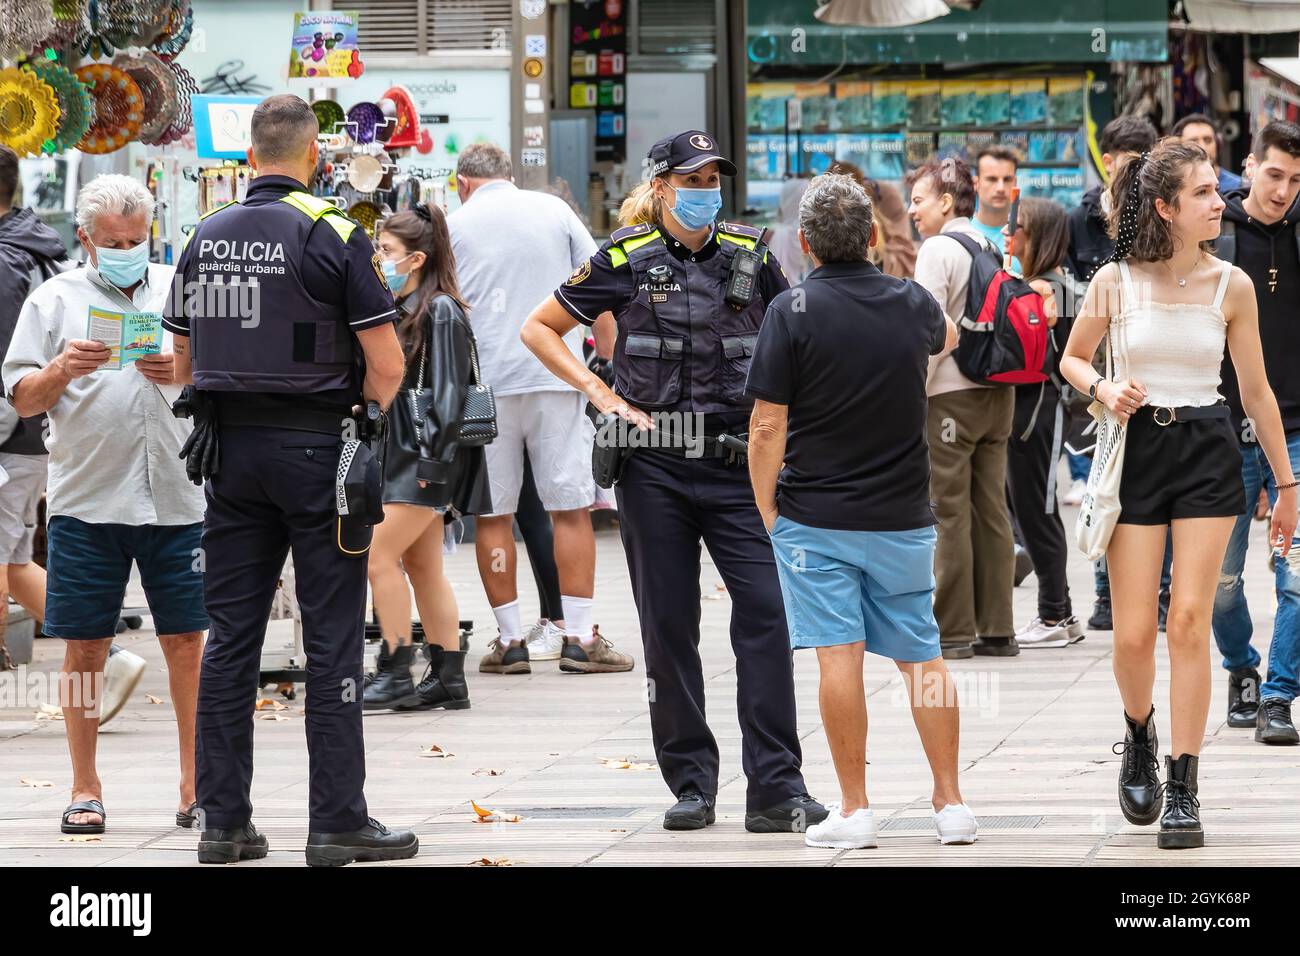 Barcelone, Espagne - 21 septembre 2021 : la police municipale de Barcelone aide les citoyens et les touristes dans leurs requêtes Banque D'Images